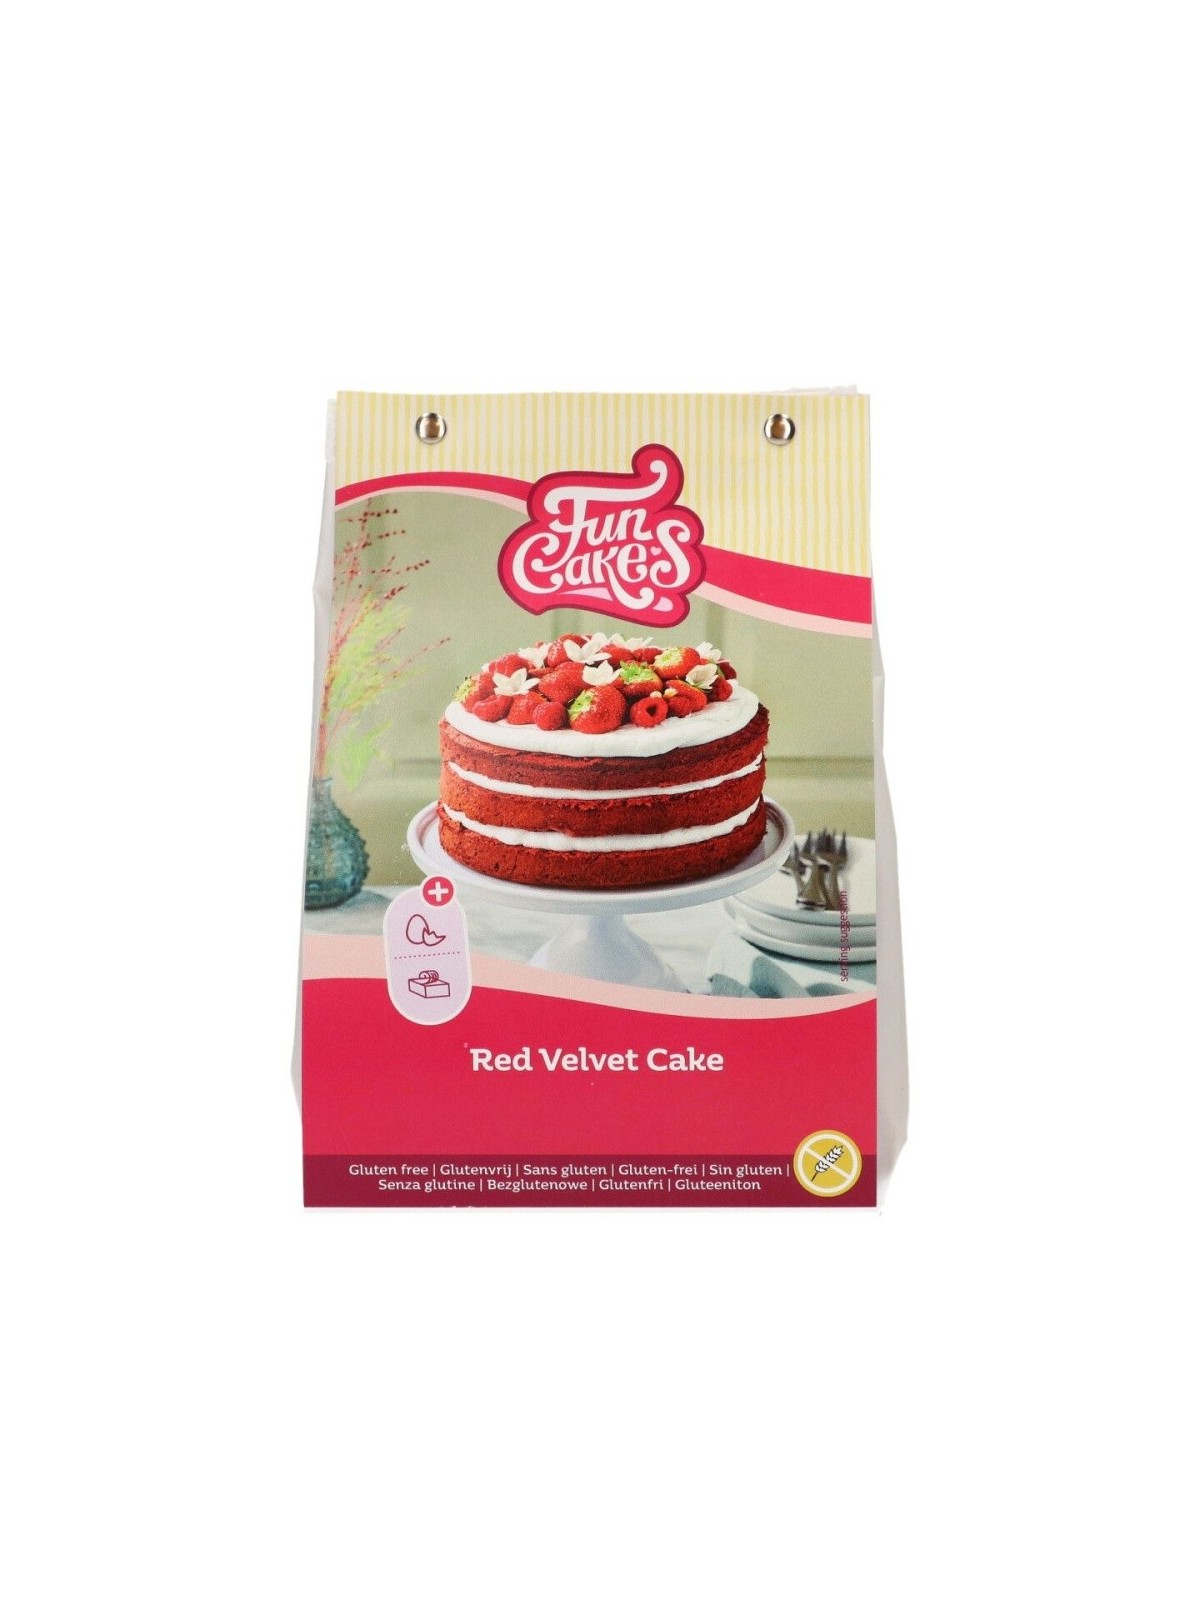 Red velvet cake with fruit - FunCakes